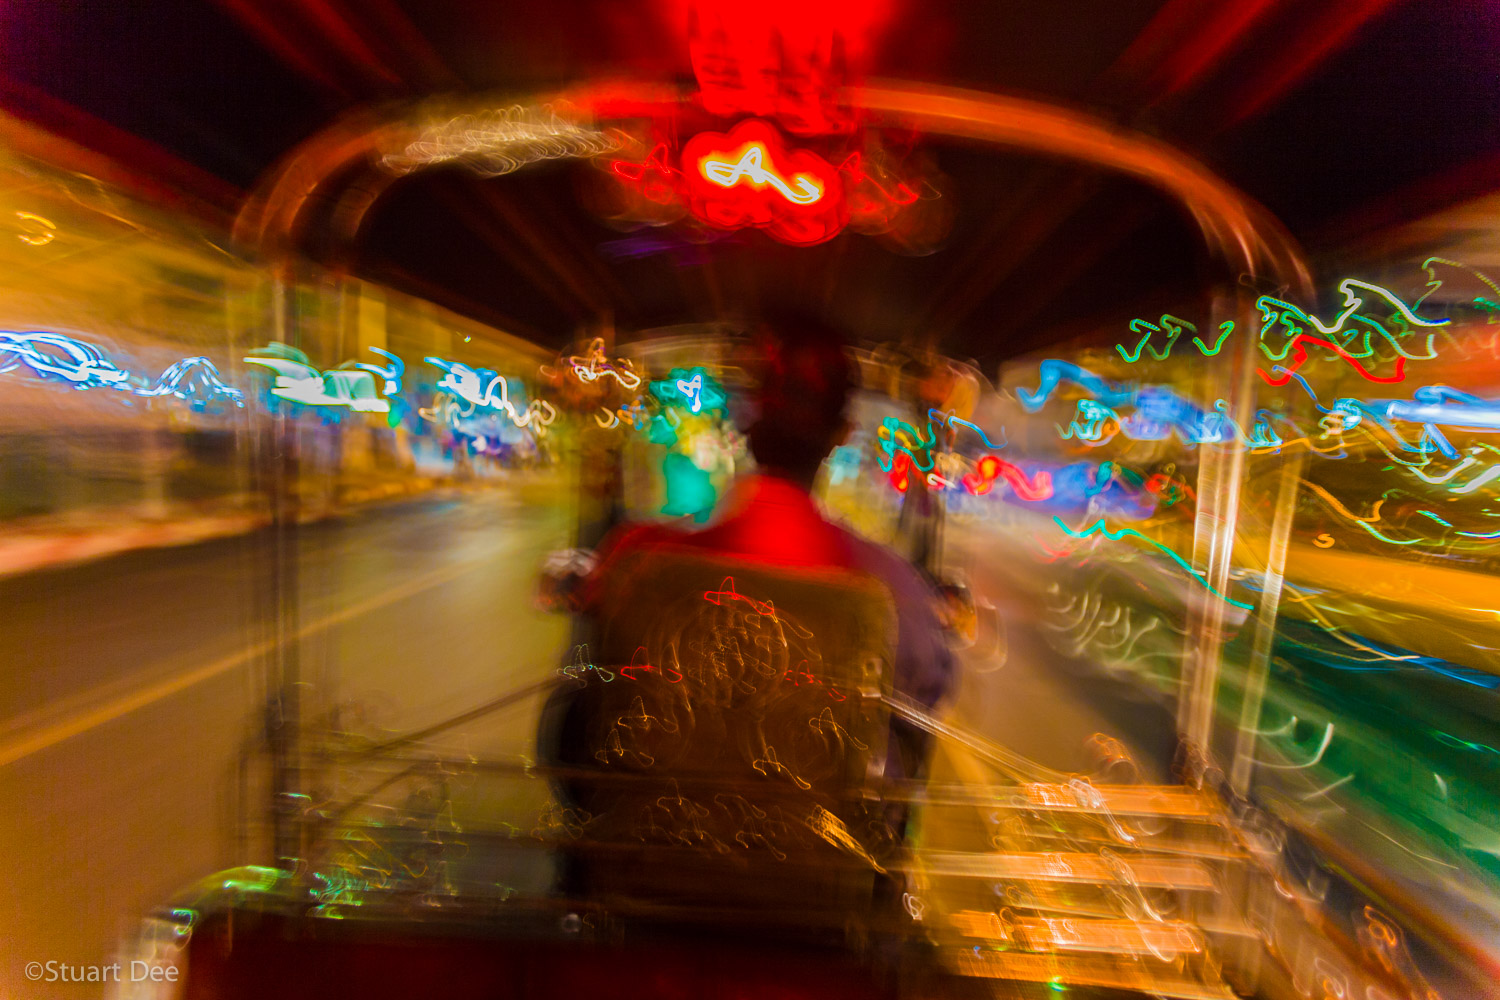  Tuk-tuk ride at night, Bangkok, Thailand 